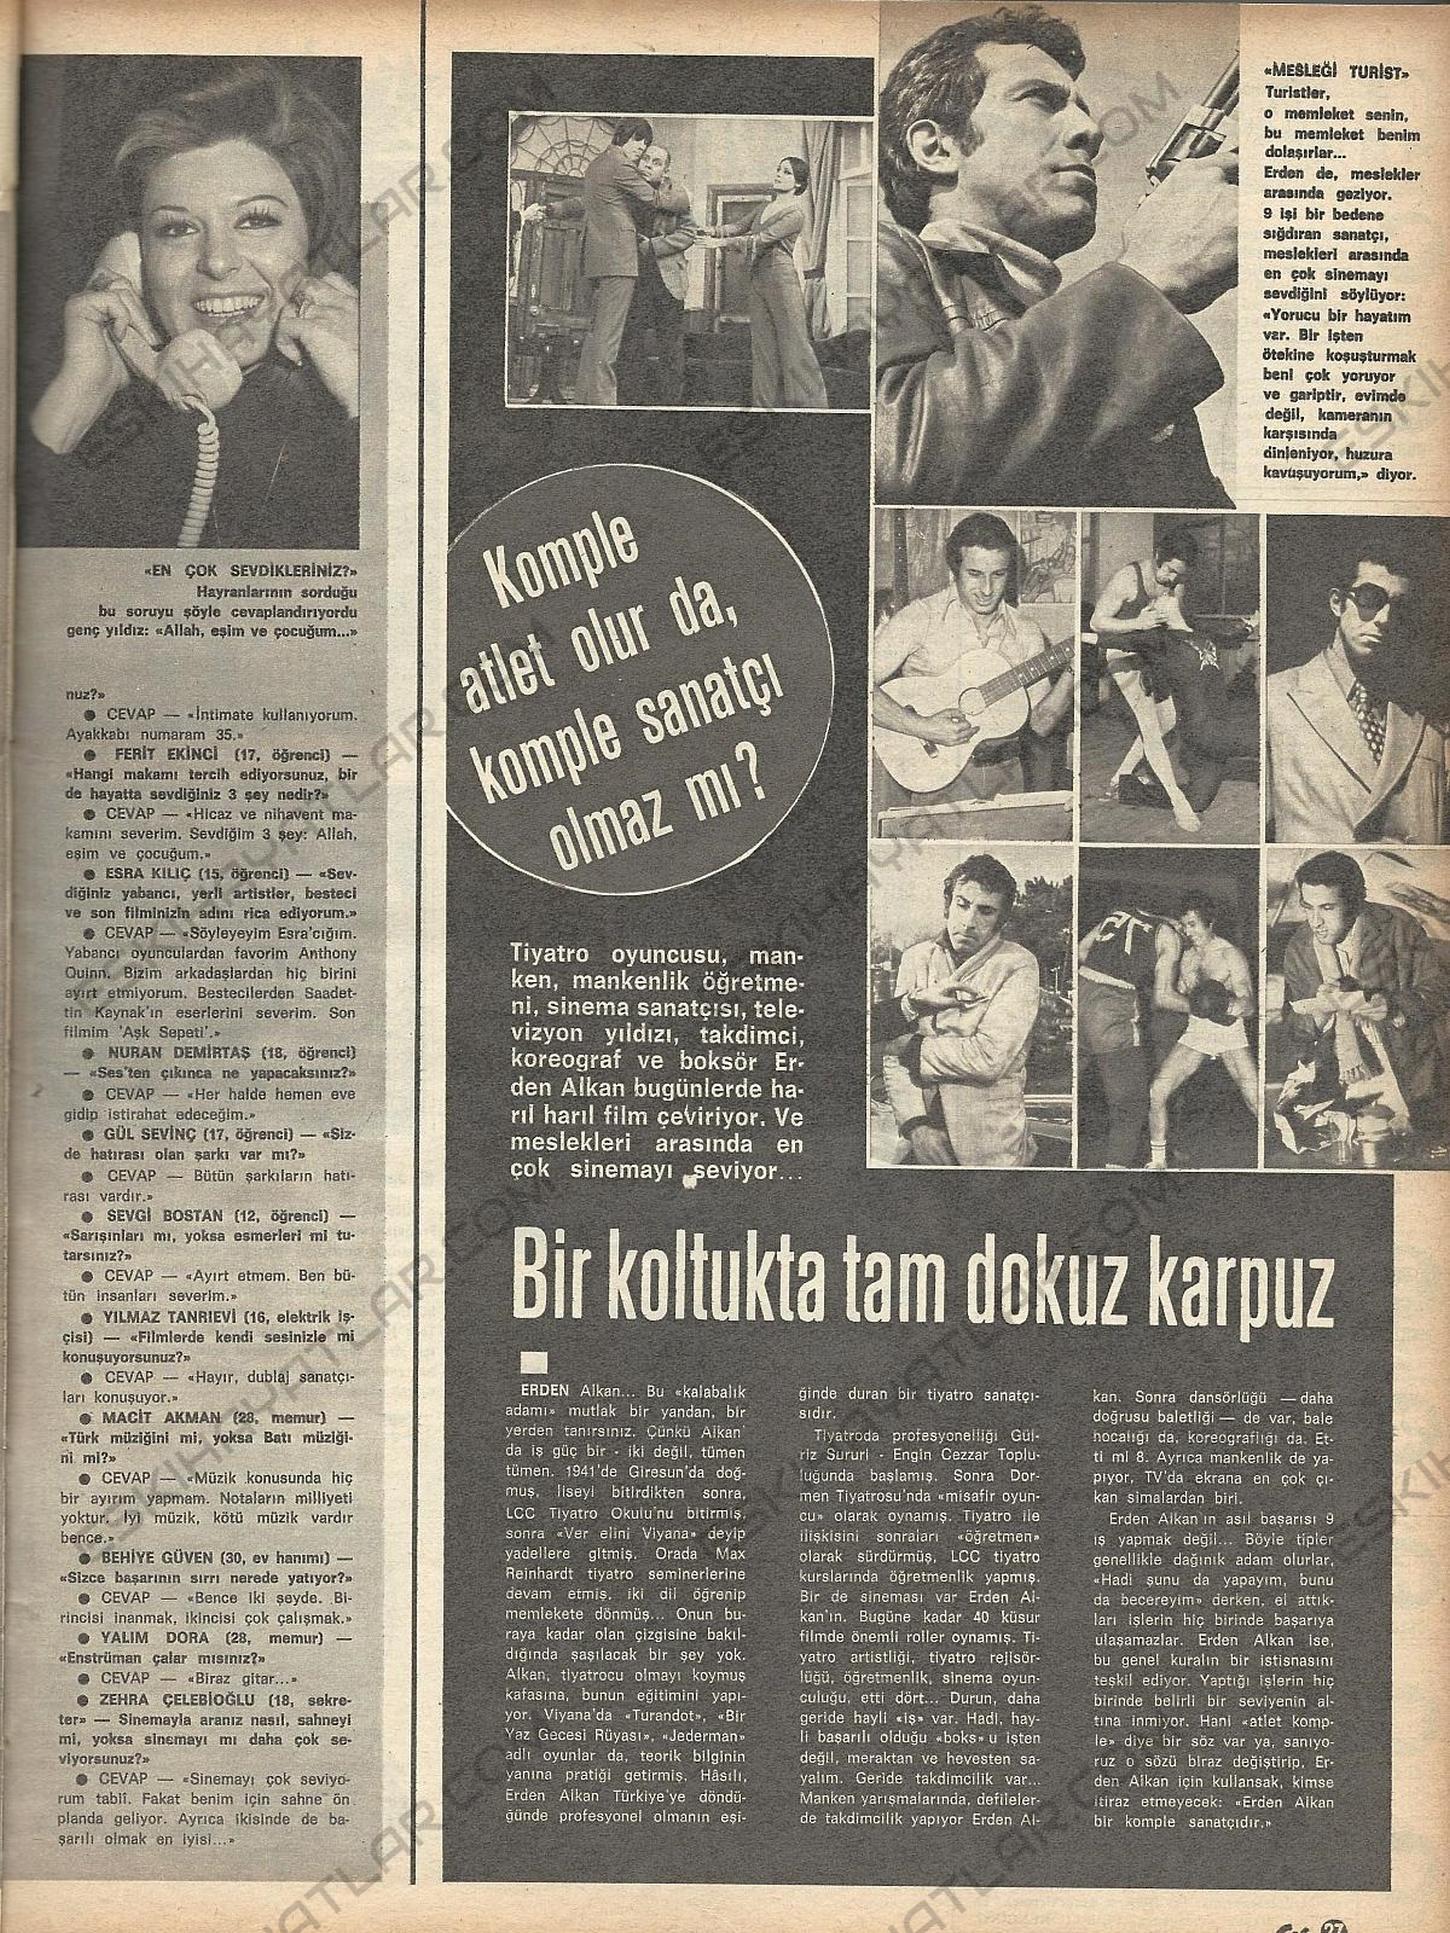 nese-karabocek-roportaji-1973-ses-dergisi-70-lerde-telefon-kullanimi (3)